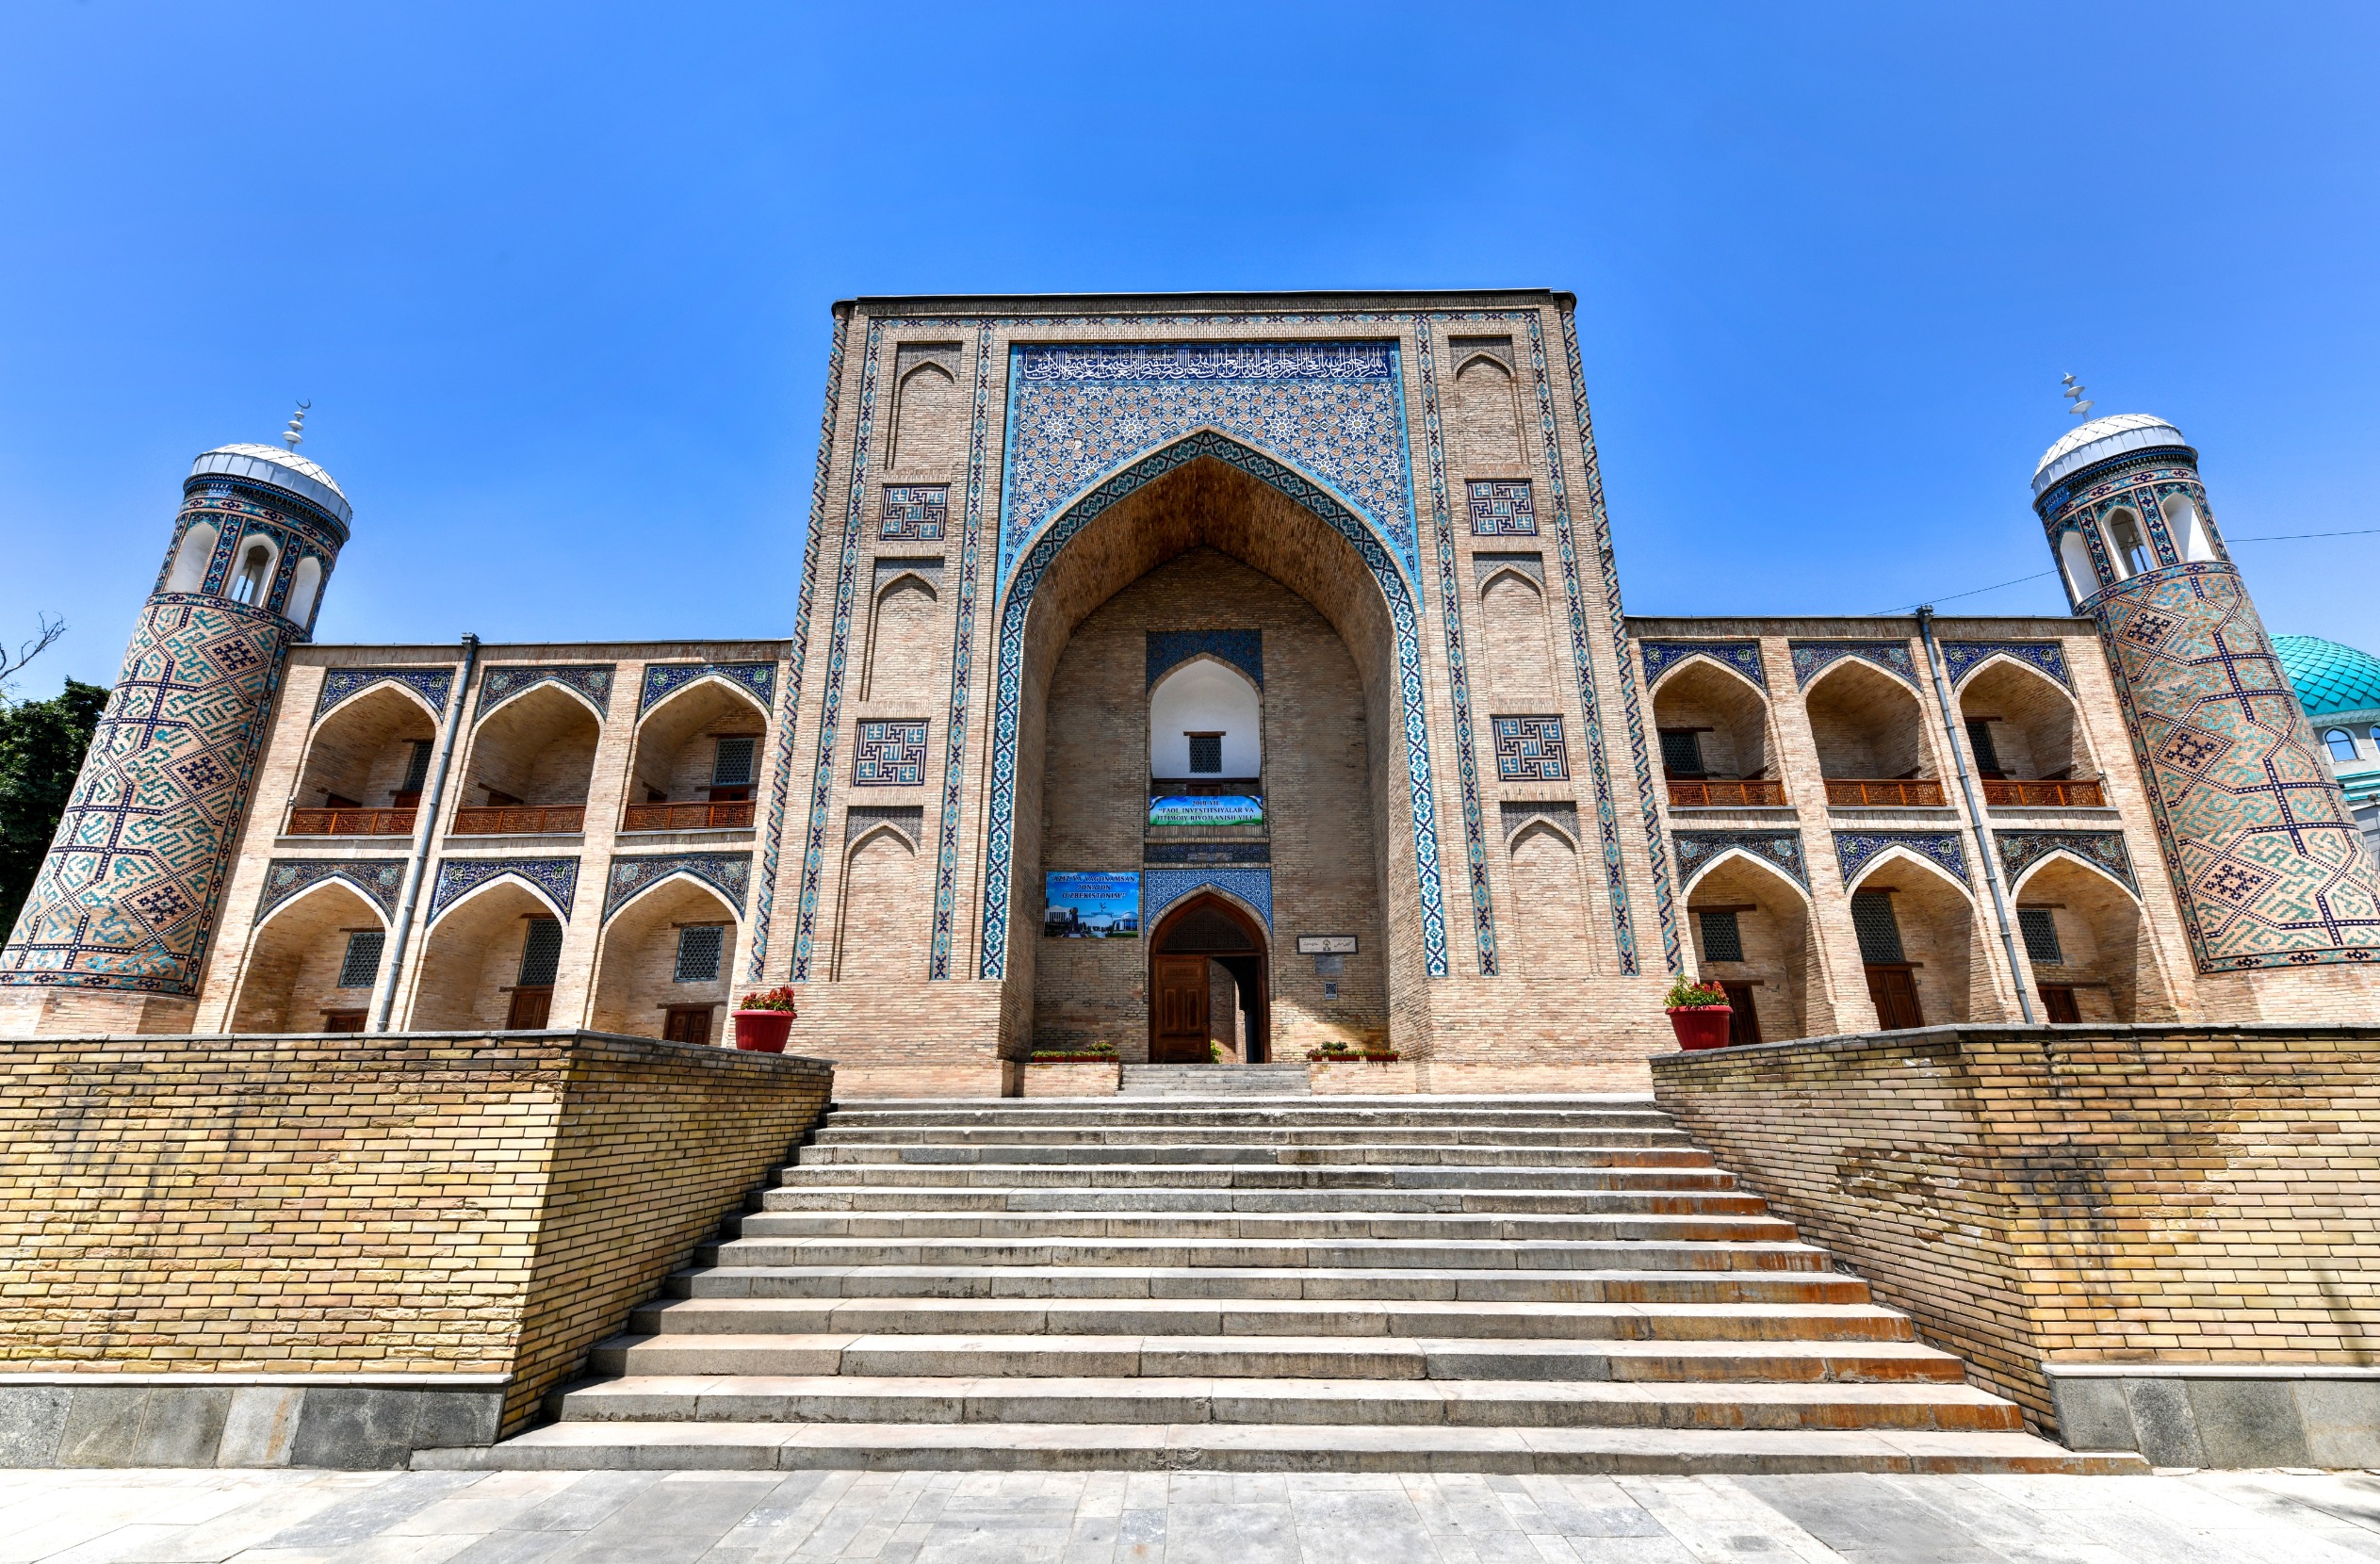 Cap sur l’Ouzbékistan : 5 raisons clés de recourir à une agence locale